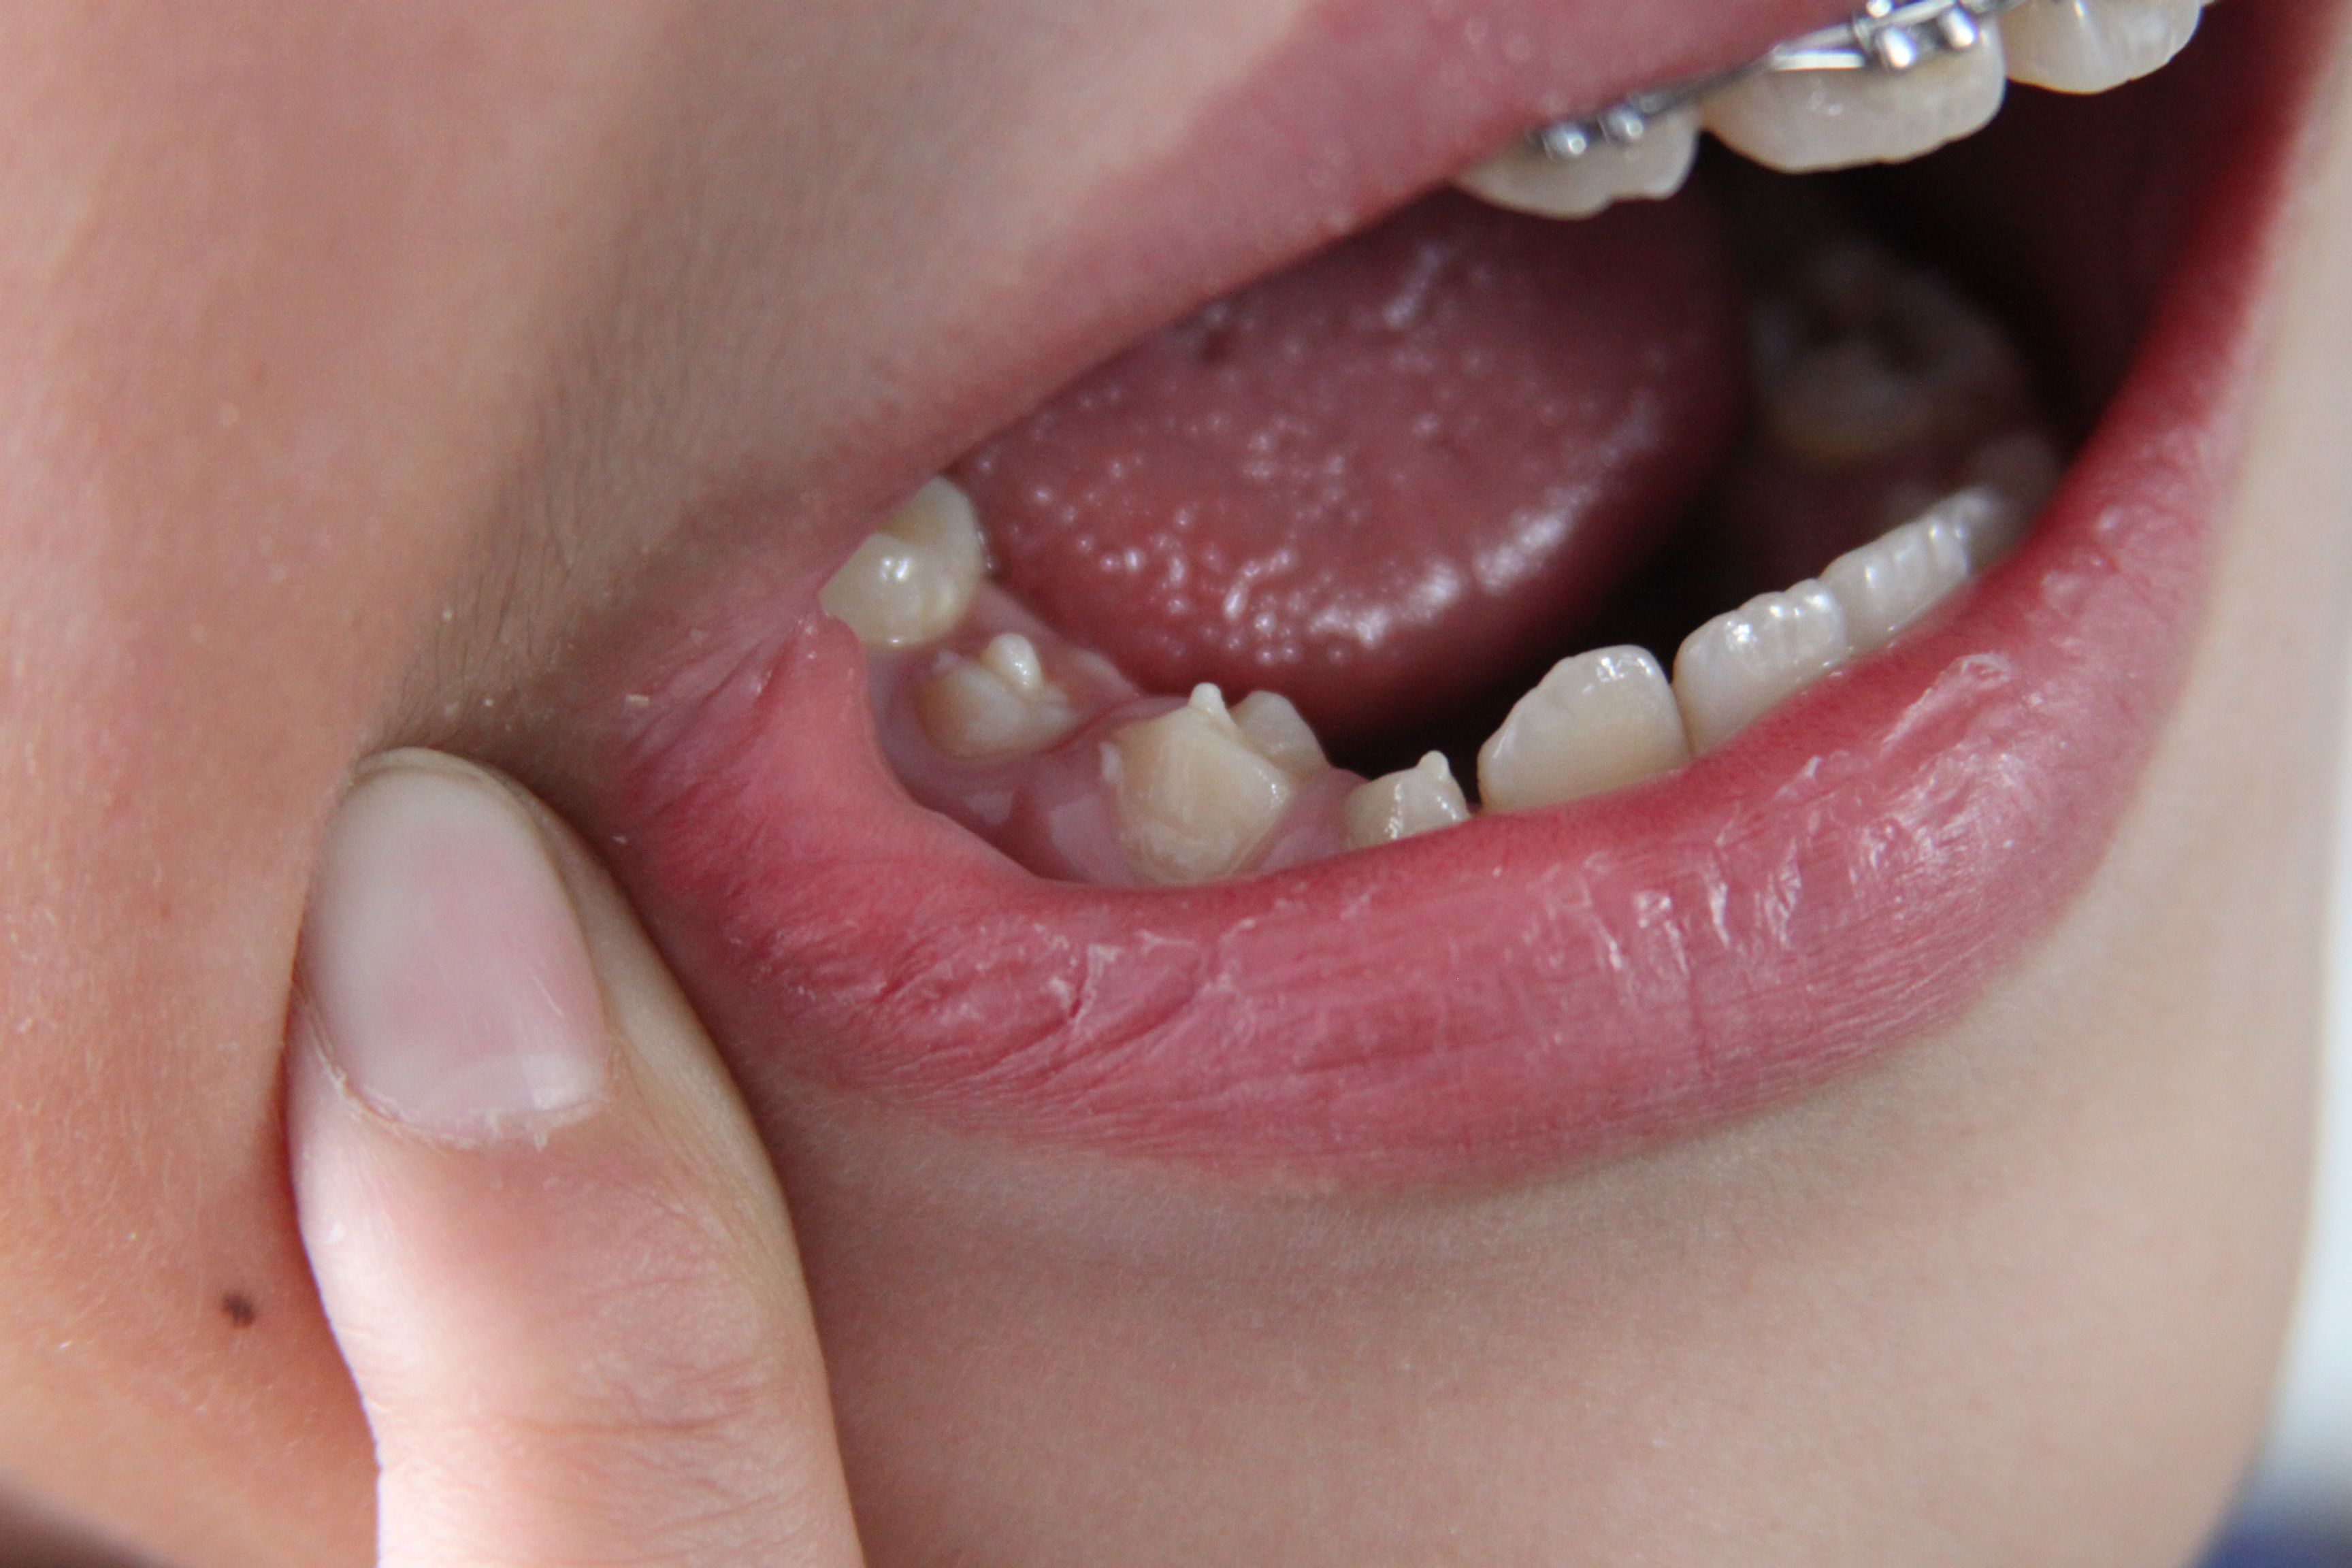 为什么孩子新换的牙齿呈锯齿状-有来医生